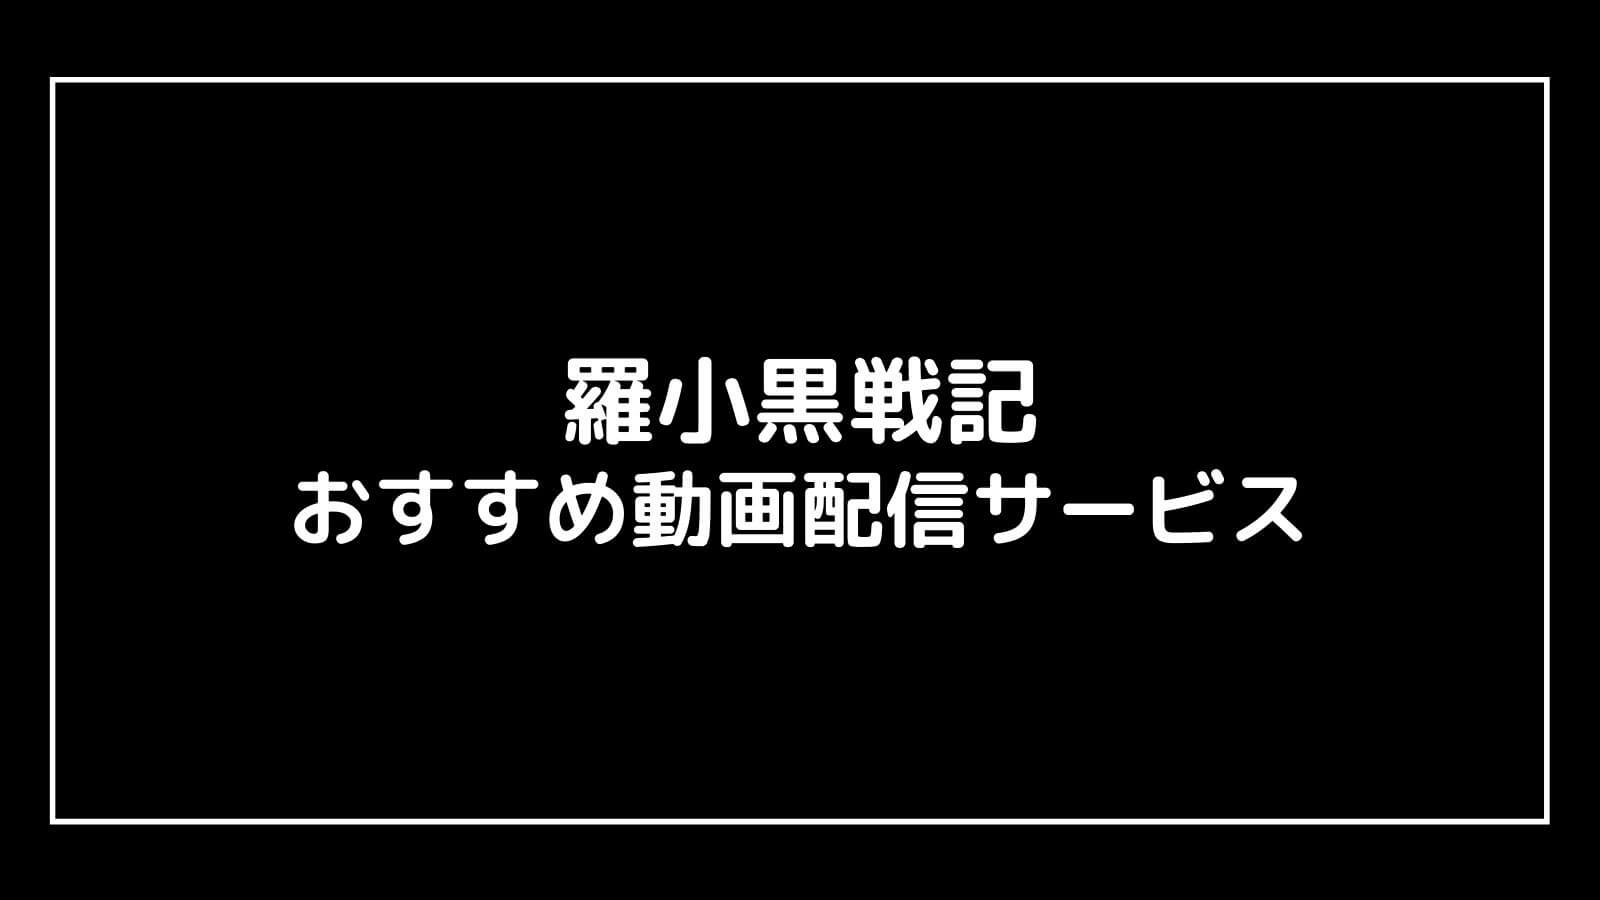 羅小黒戦記(ロシャオヘイセンキ)の無料映画配信をフル視聴できる動画サイト